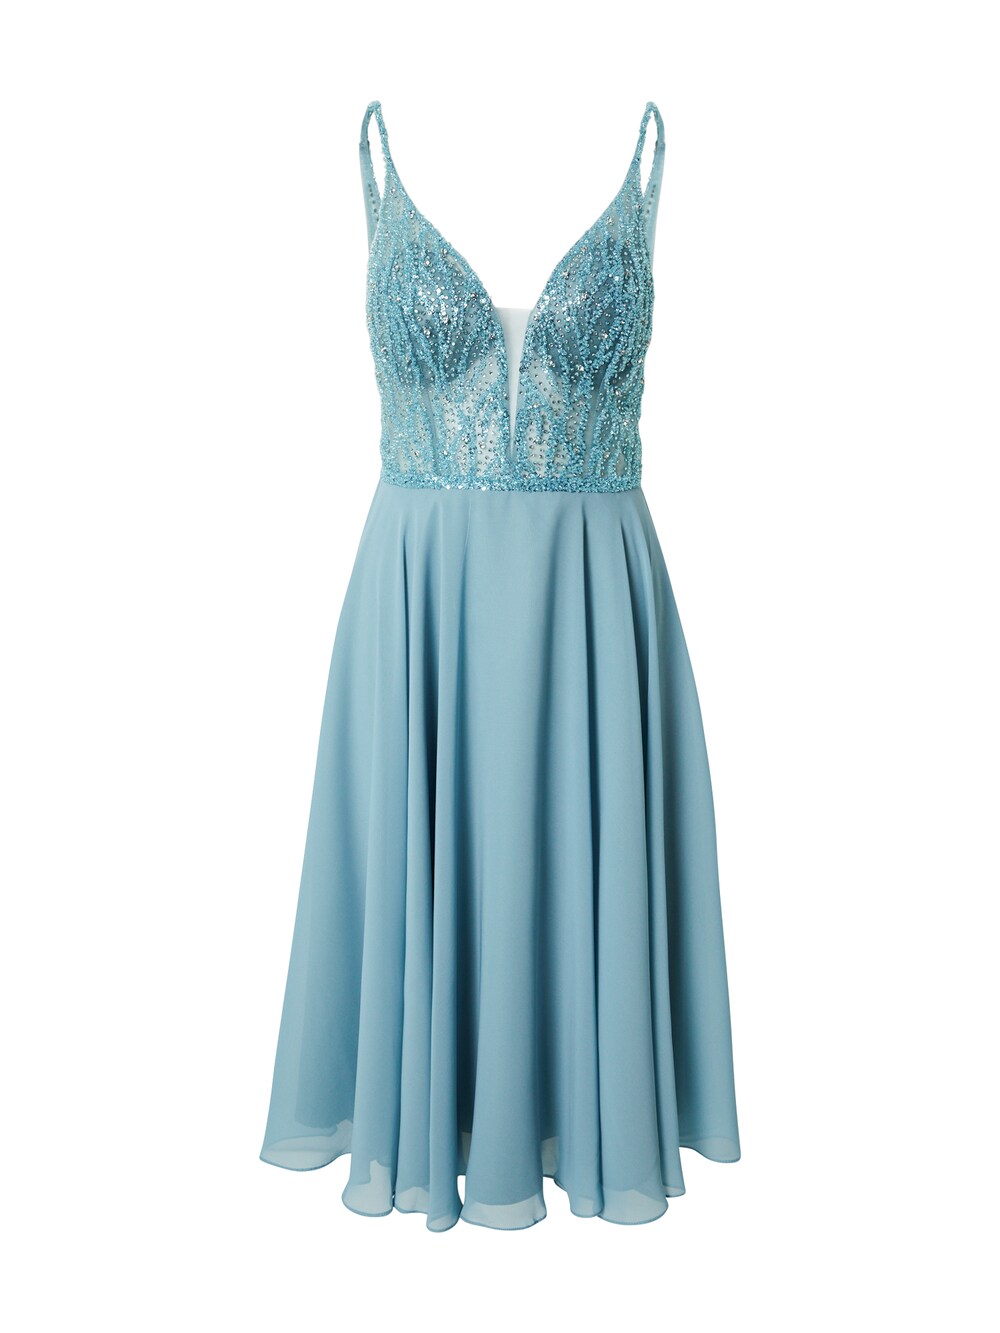 Коктейльное платье SWING, голубое небо лонгслив женский цвет голубое небо размер 44 m